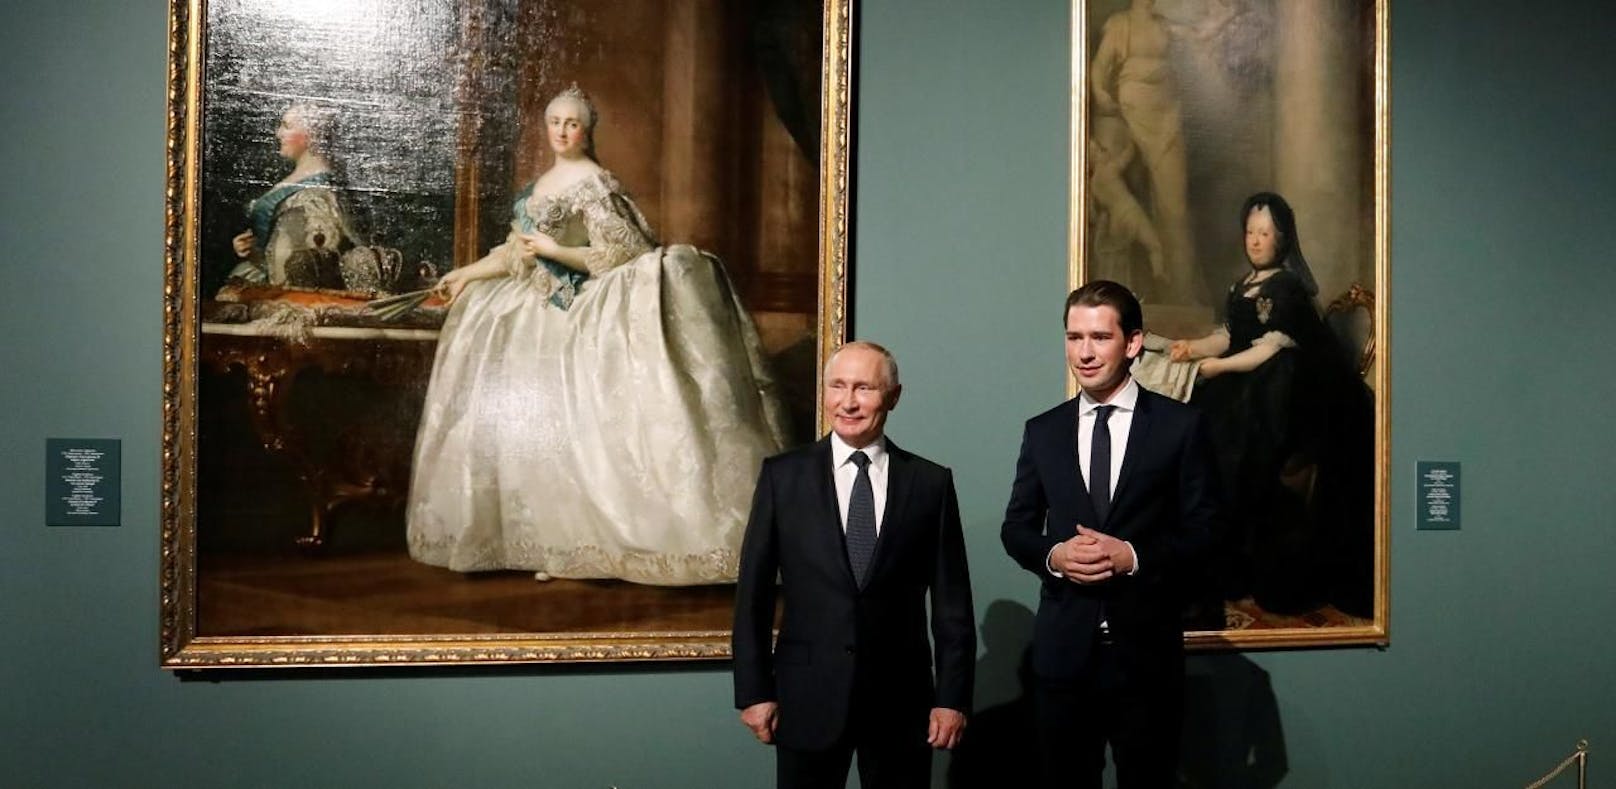 Kurz bringt die Kaiserin zu Putin nach St. Petersburg